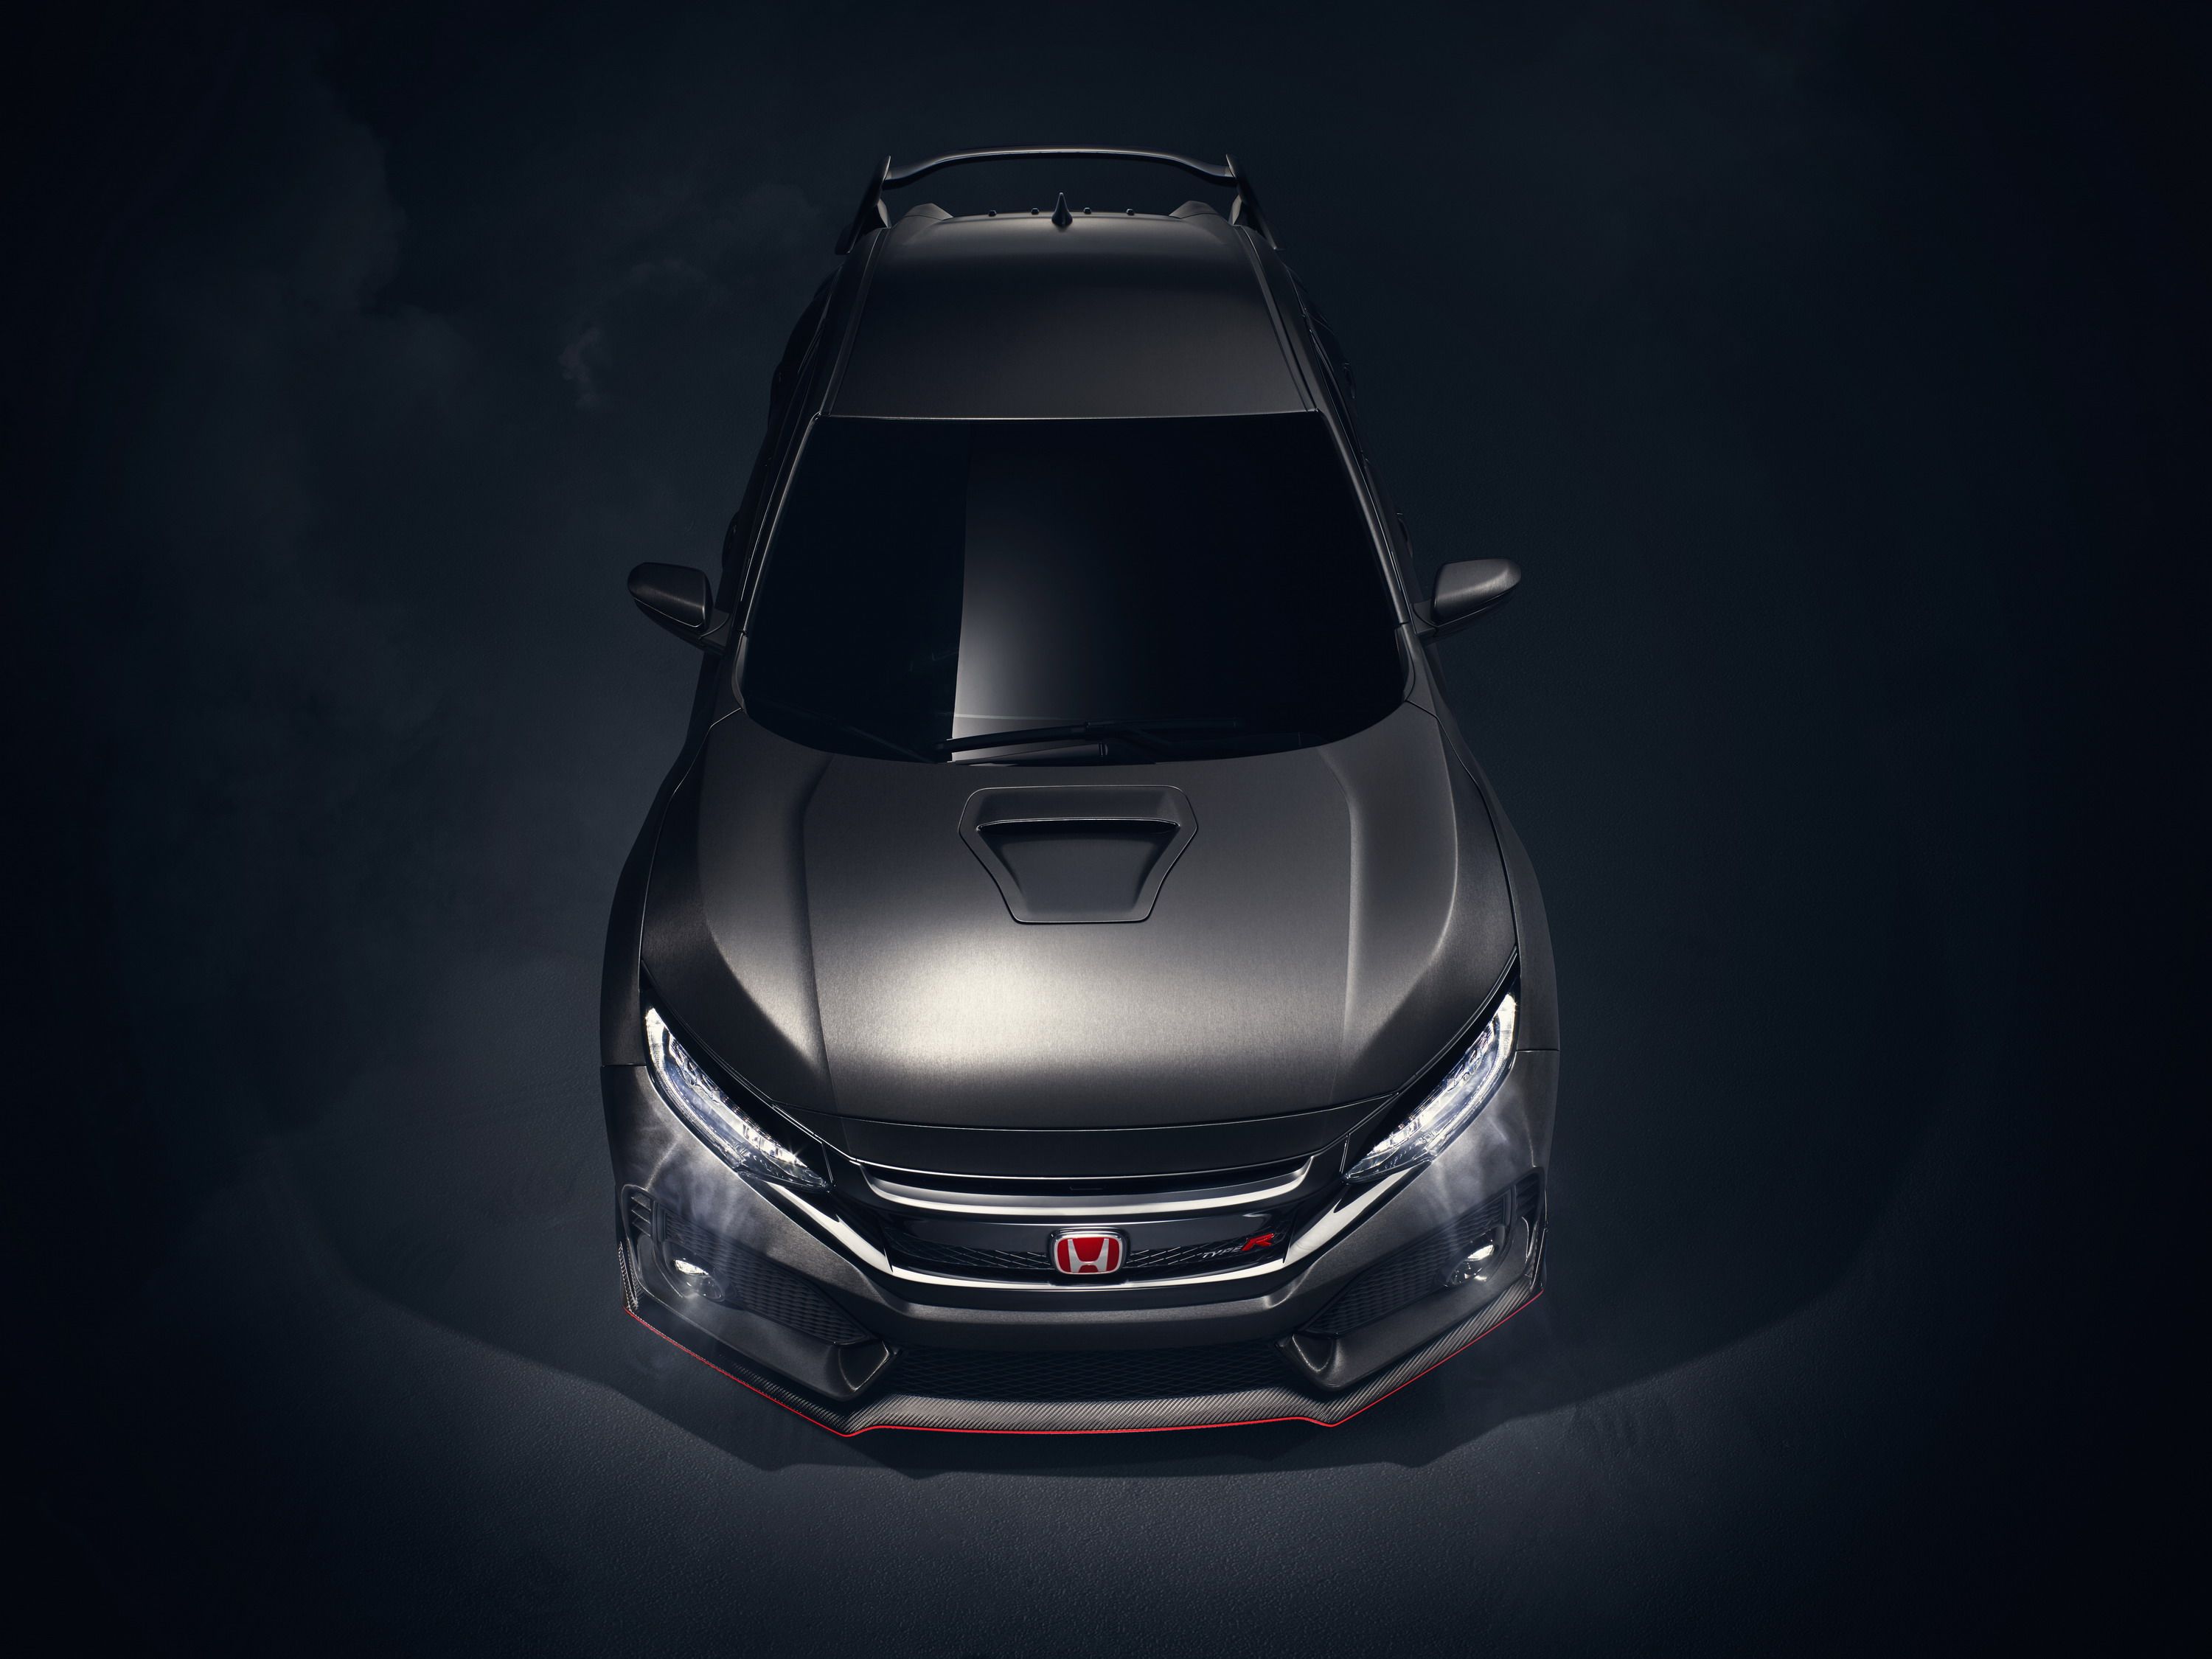 2016 Honda Civic Type R Concept